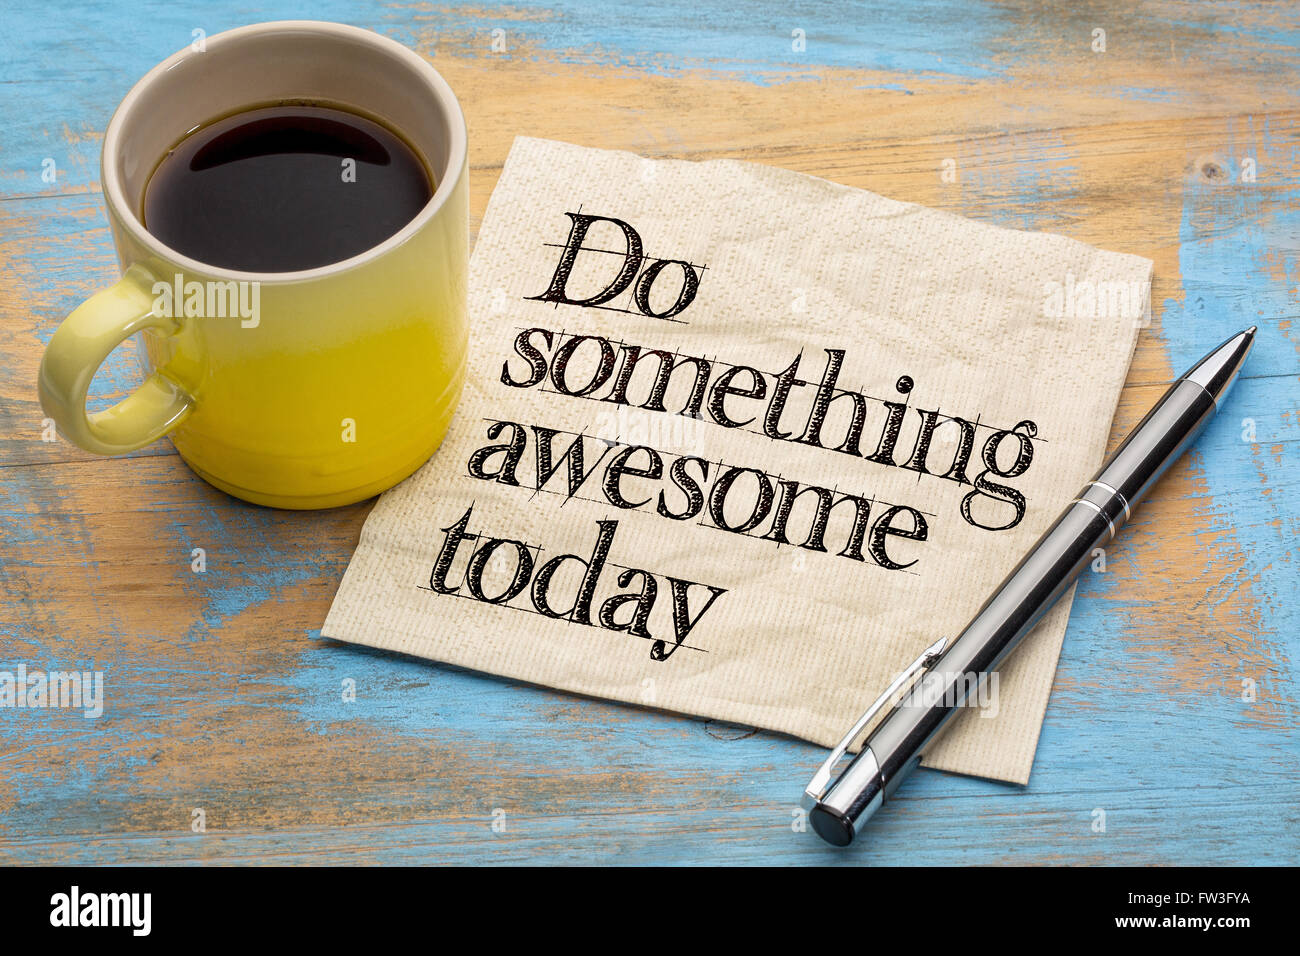 tun Sie etwas awesome heute - Beratung oder Erinnerung - Handschrift auf einer Serviette mit einer Tasse Kaffee Stockfoto